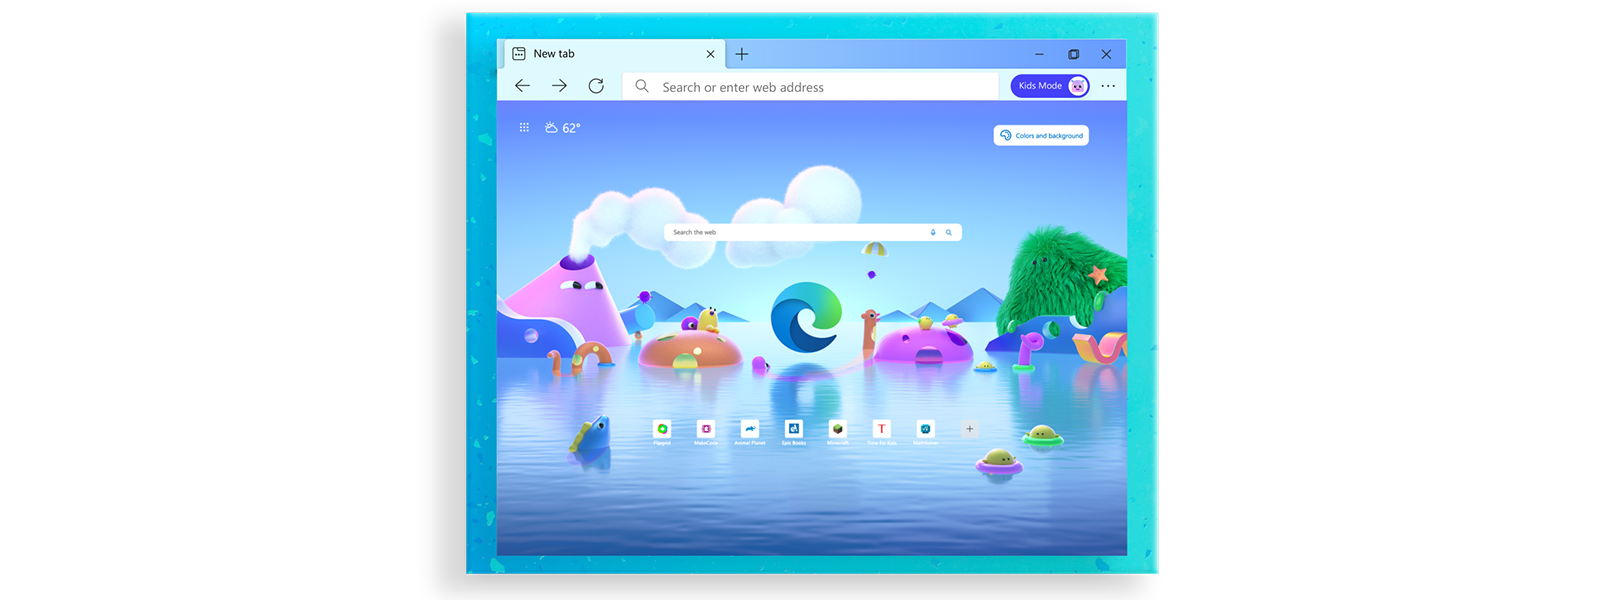 Microsoft Edge -selaimen aloitusnäyttö, jossa on erilaisia lasten selaustilan piirroshahmoja